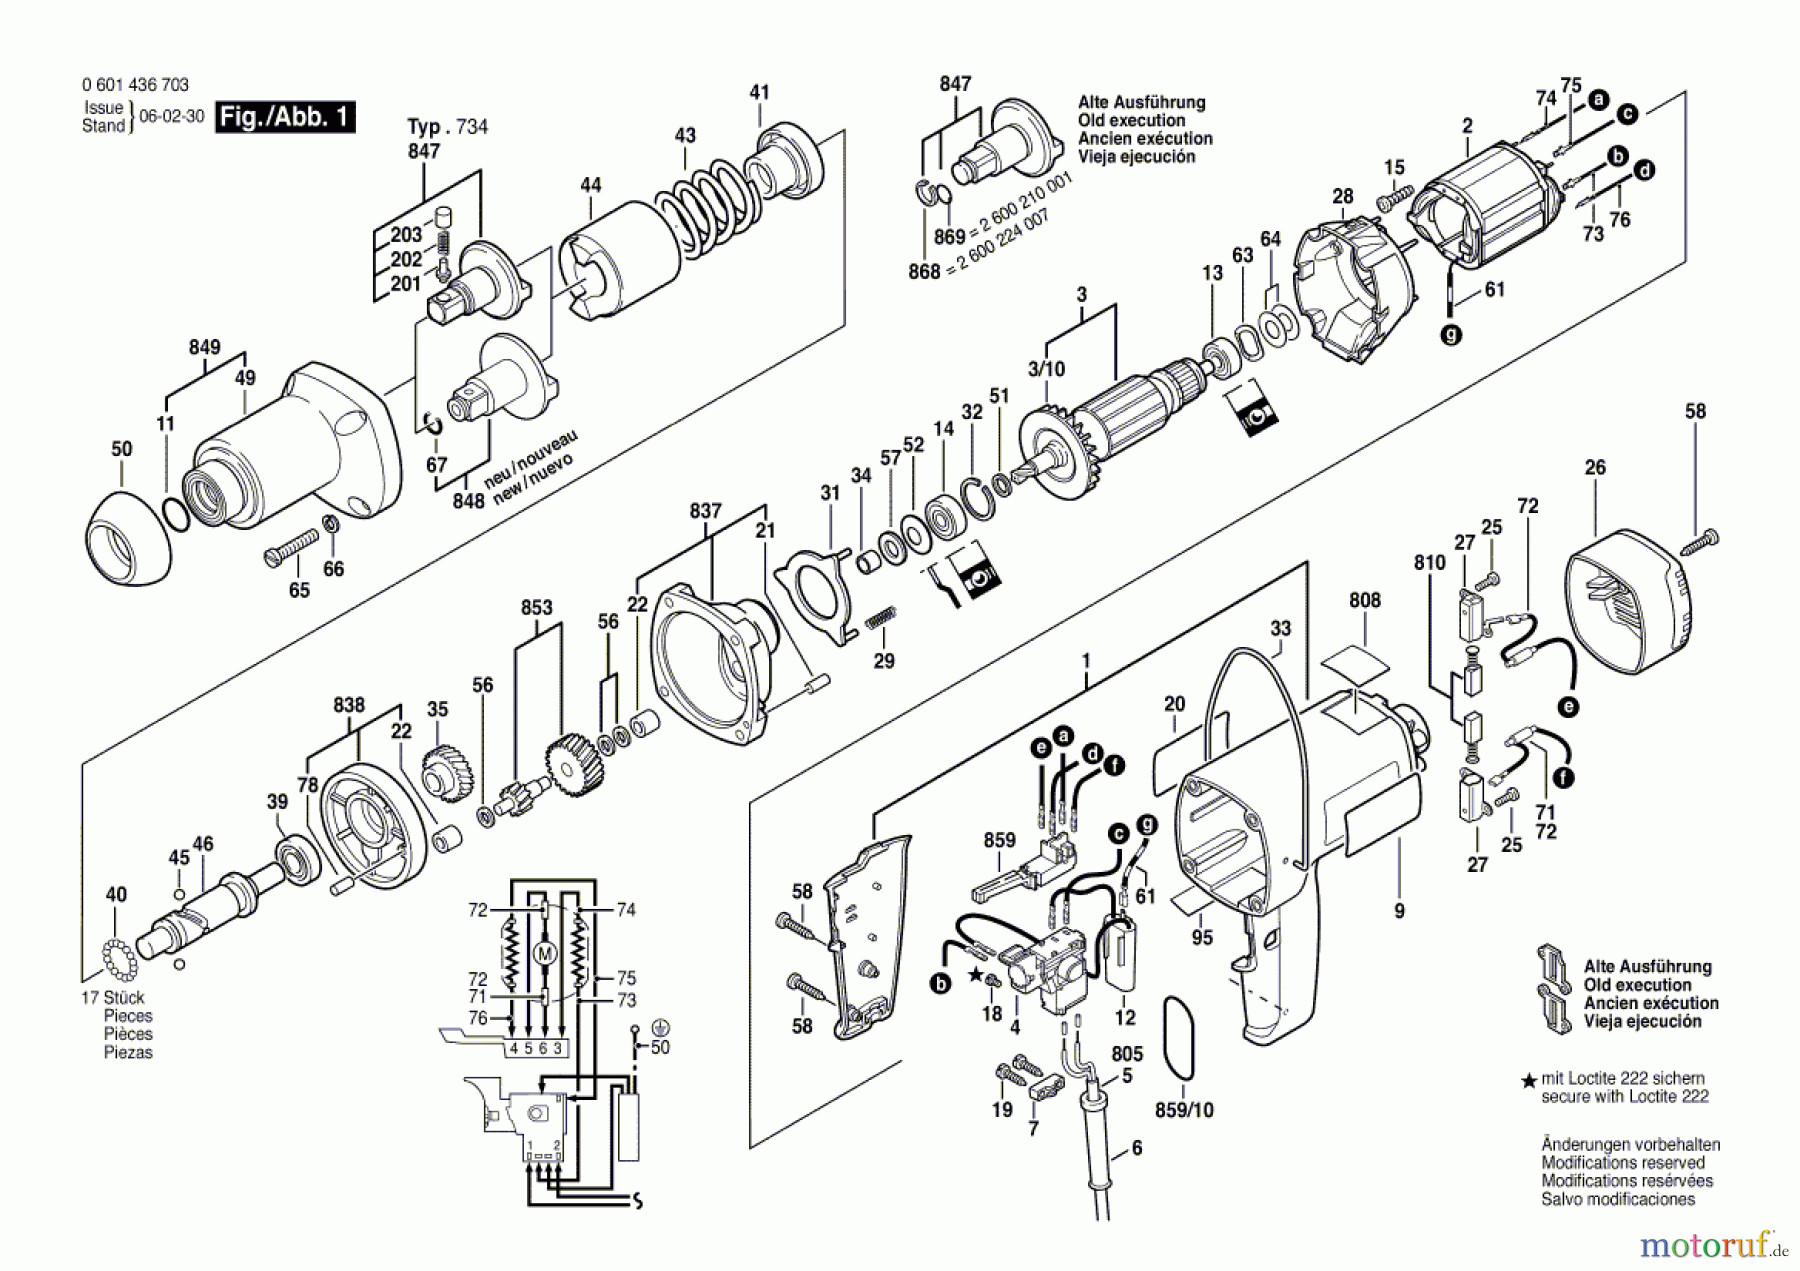  Bosch Werkzeug Schlagschrauber GSR 1436.7 Seite 1